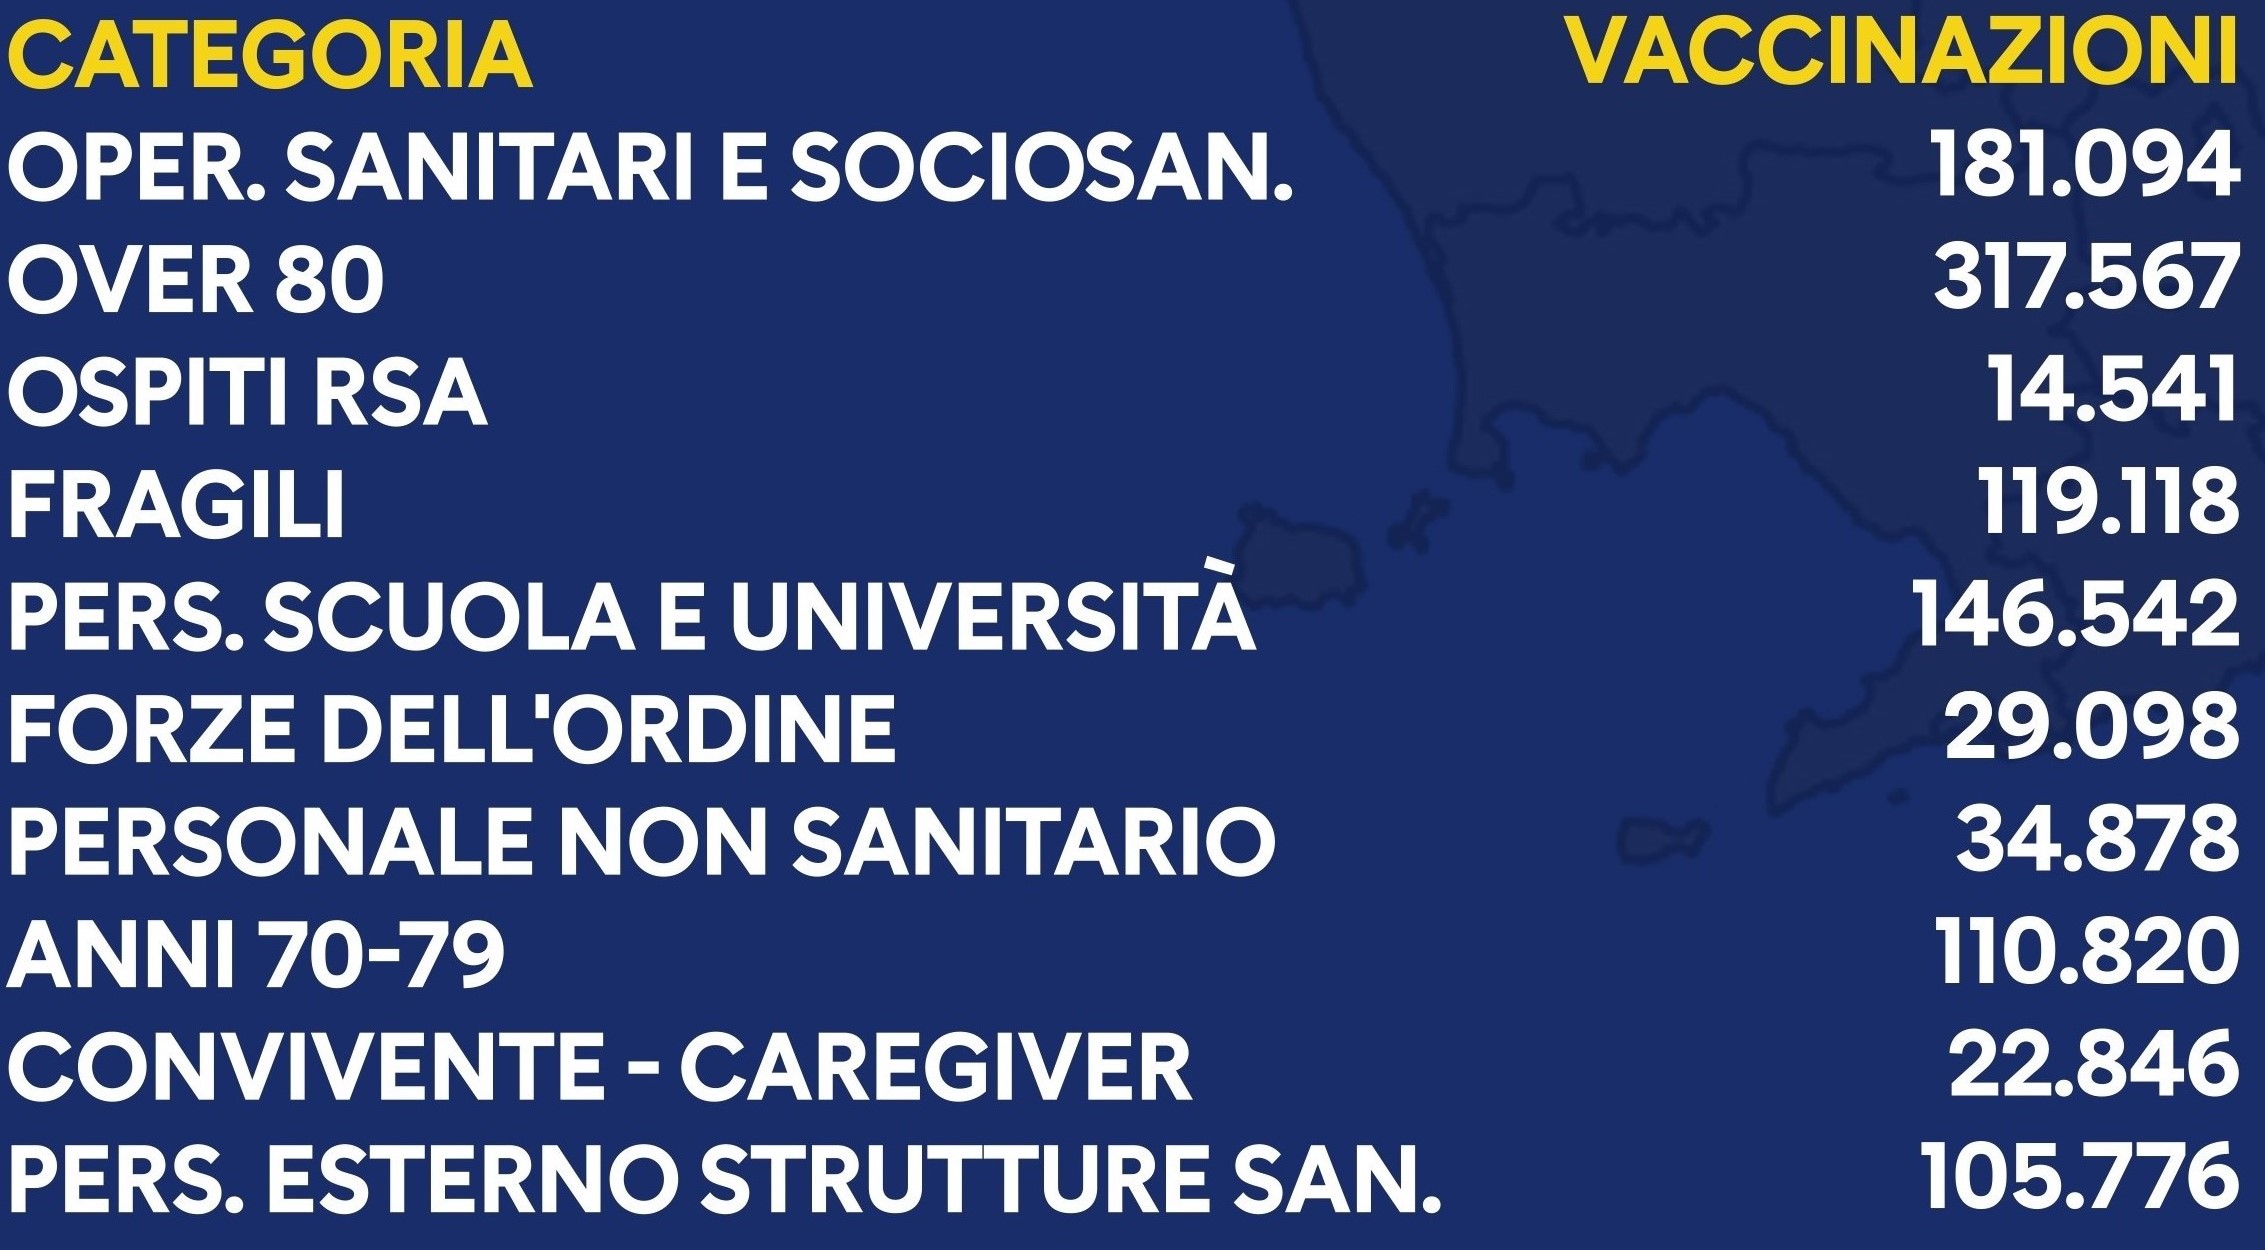 Regione Campania Covid-19, bollettino vaccinazioni dell'11 aprile